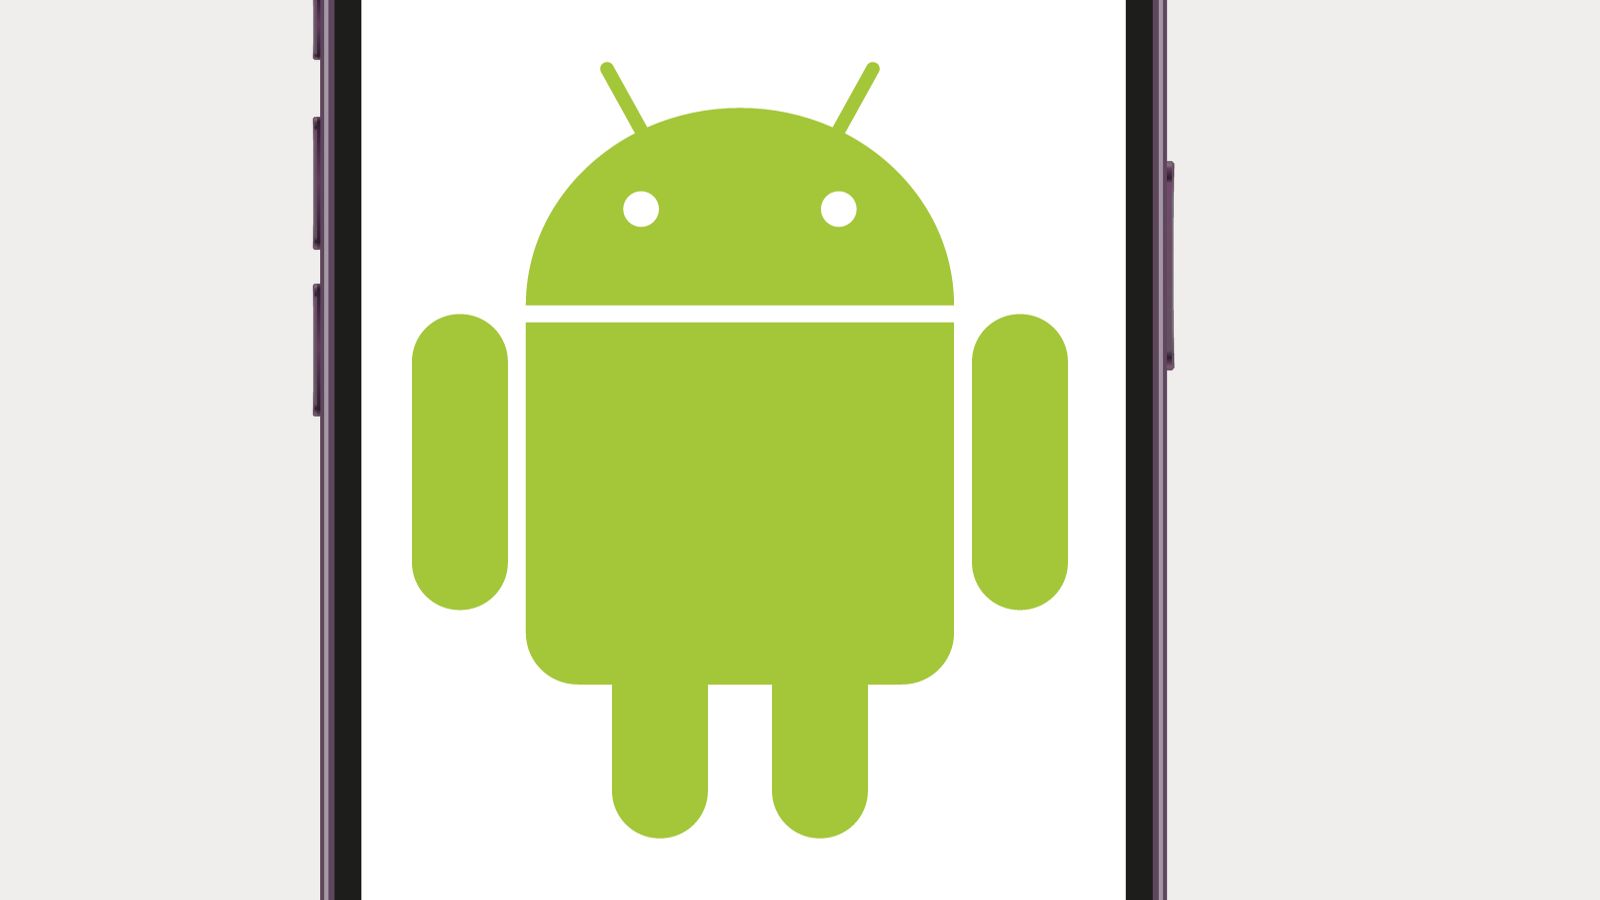 Android, sono GRATIS queste app in REGALO sul Play Store di Google